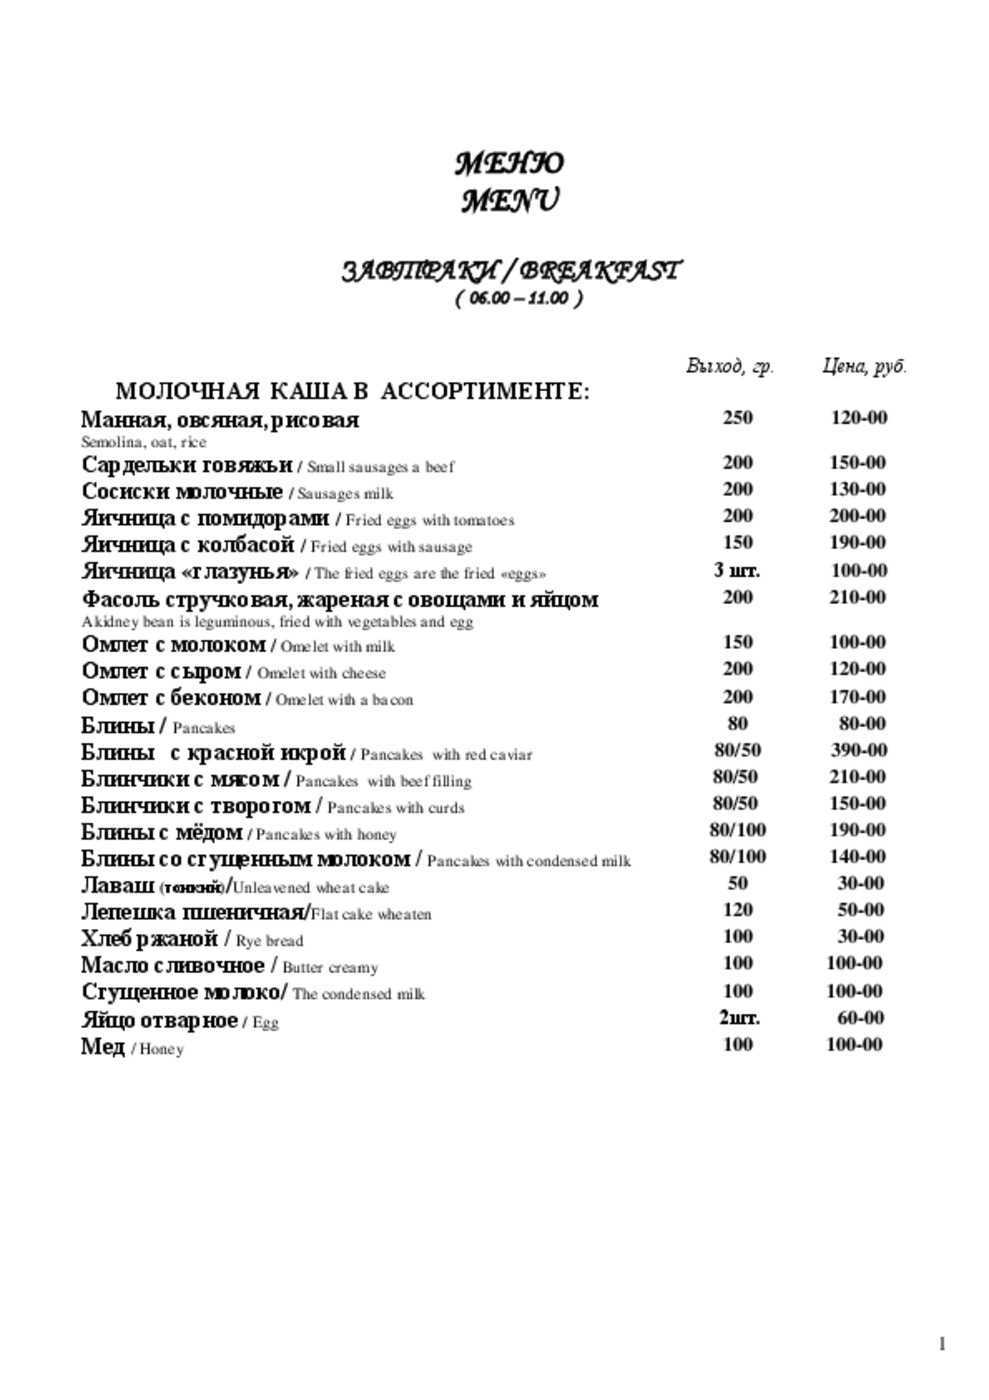 Ресторан Невская Жемчужина на Обуховской обороне меню